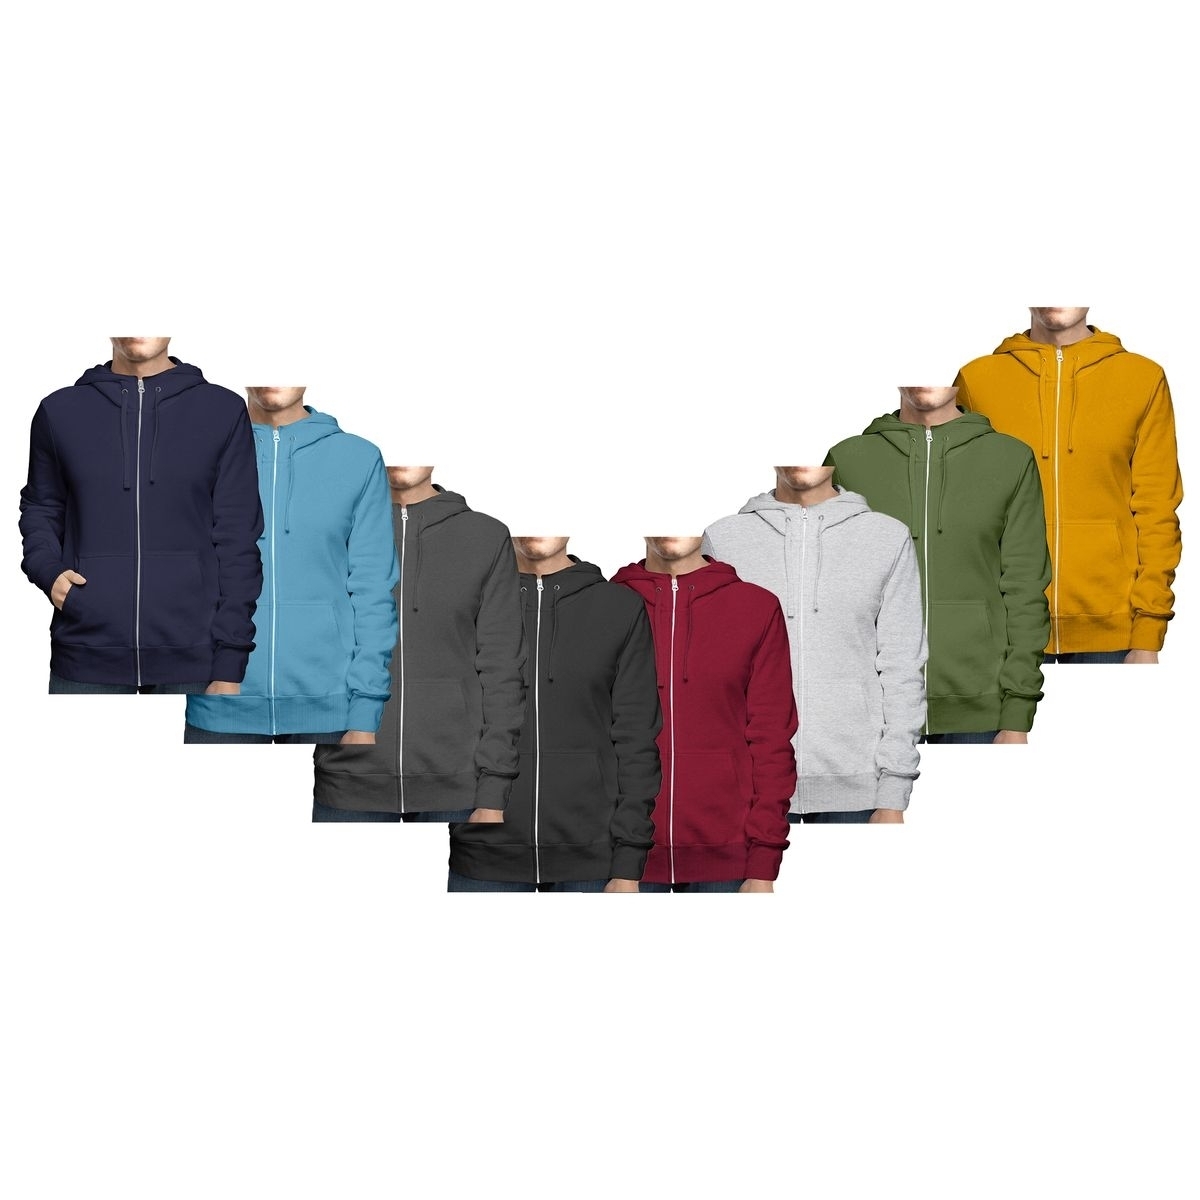 Men's Big & Tall Winter Warm Soft Cozy Full Zip-Up Fleece Lined Hoodie Sweatshirt - Red, 3X